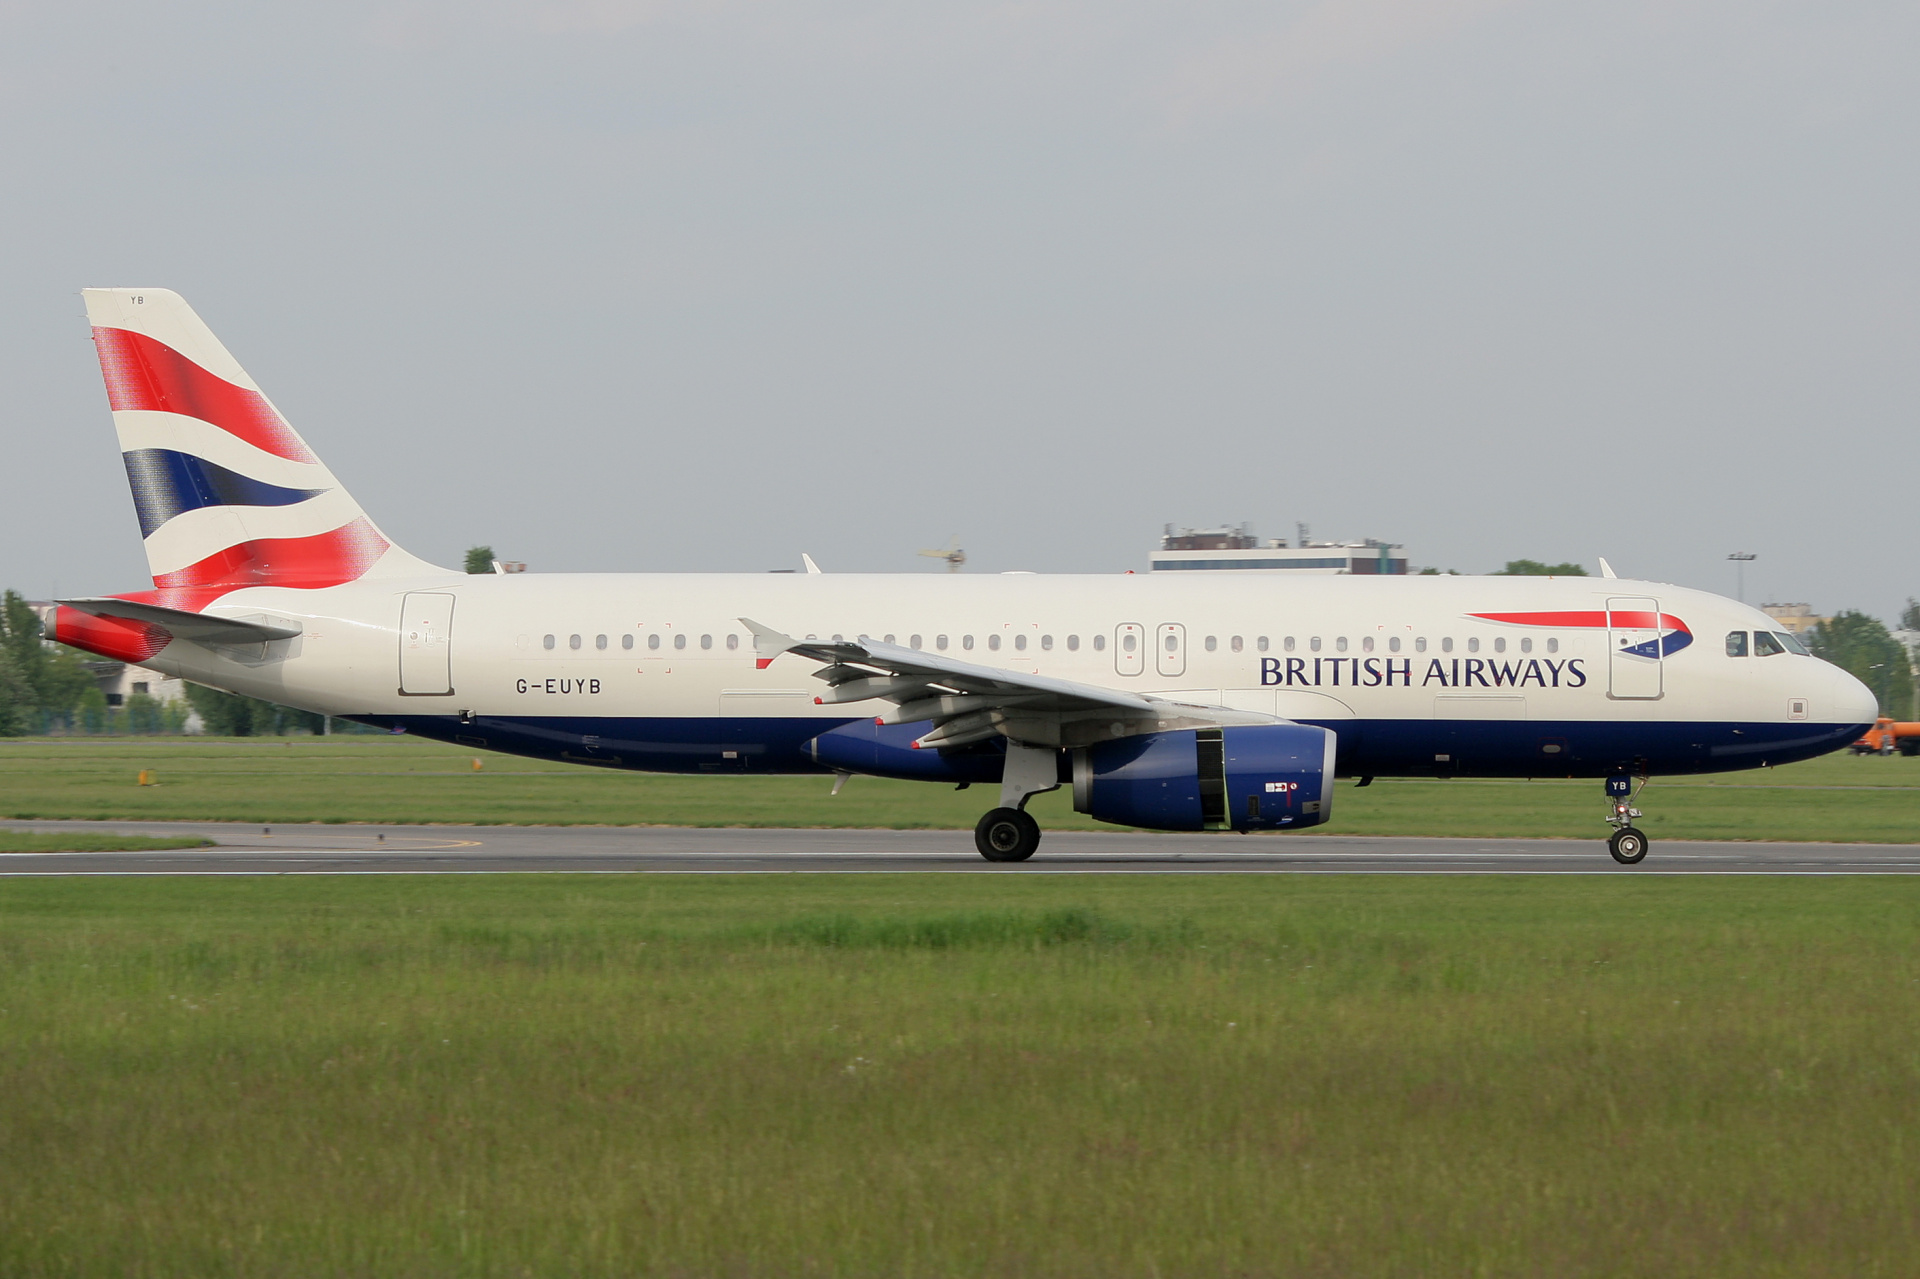 G-EUYB (Aircraft » EPWA Spotting » Airbus A320-200 » British Airways)